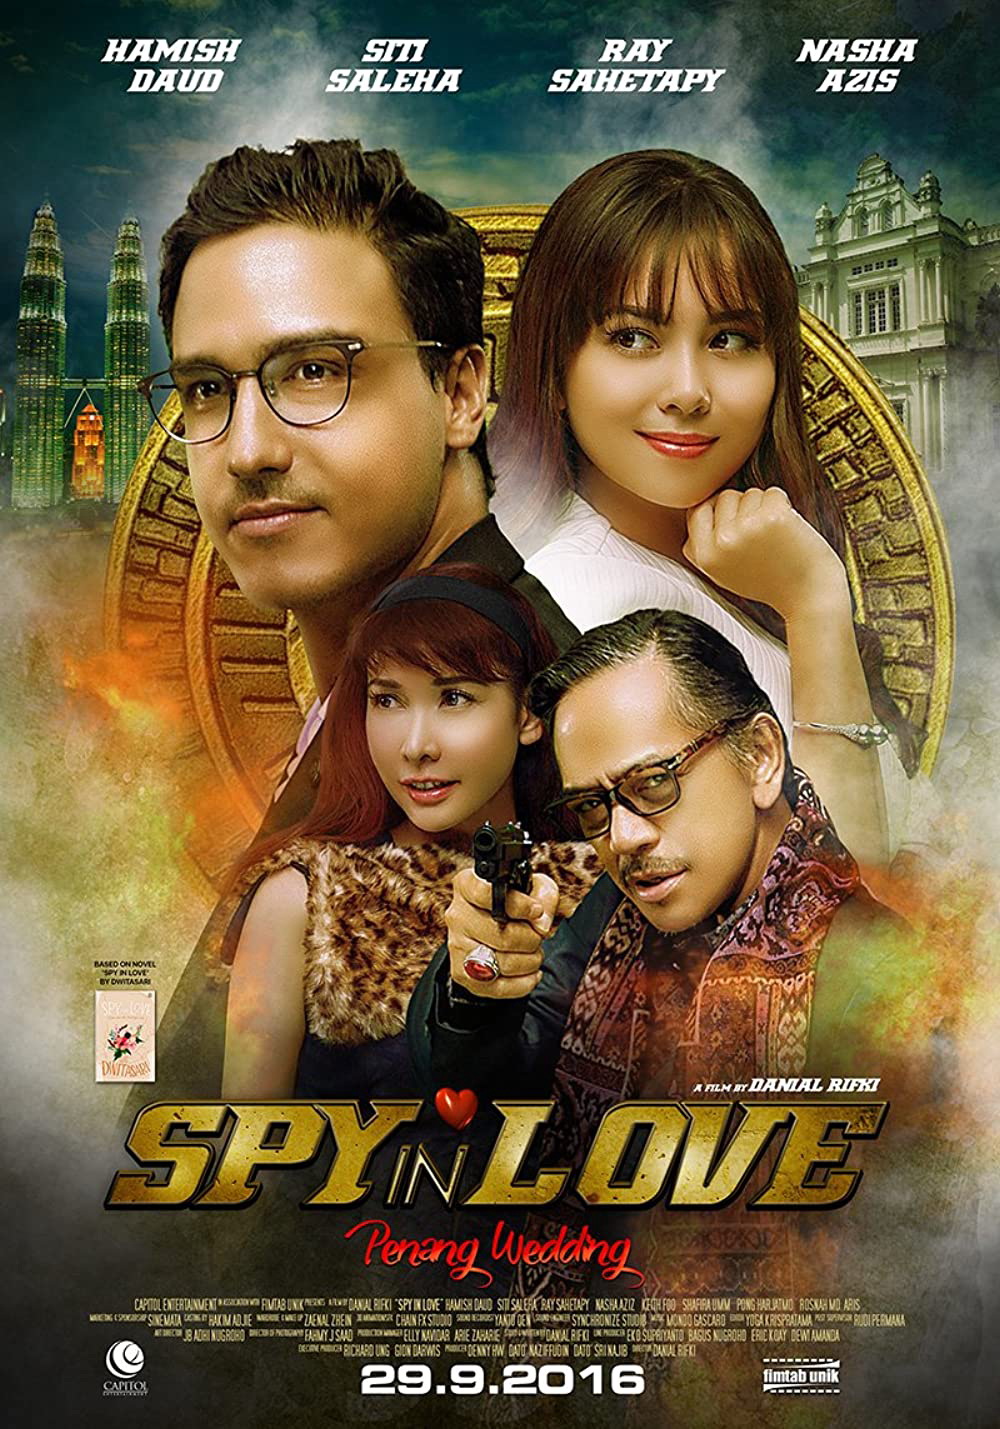 Xem Phim Điệp viên đang yêu (Spy in Love)